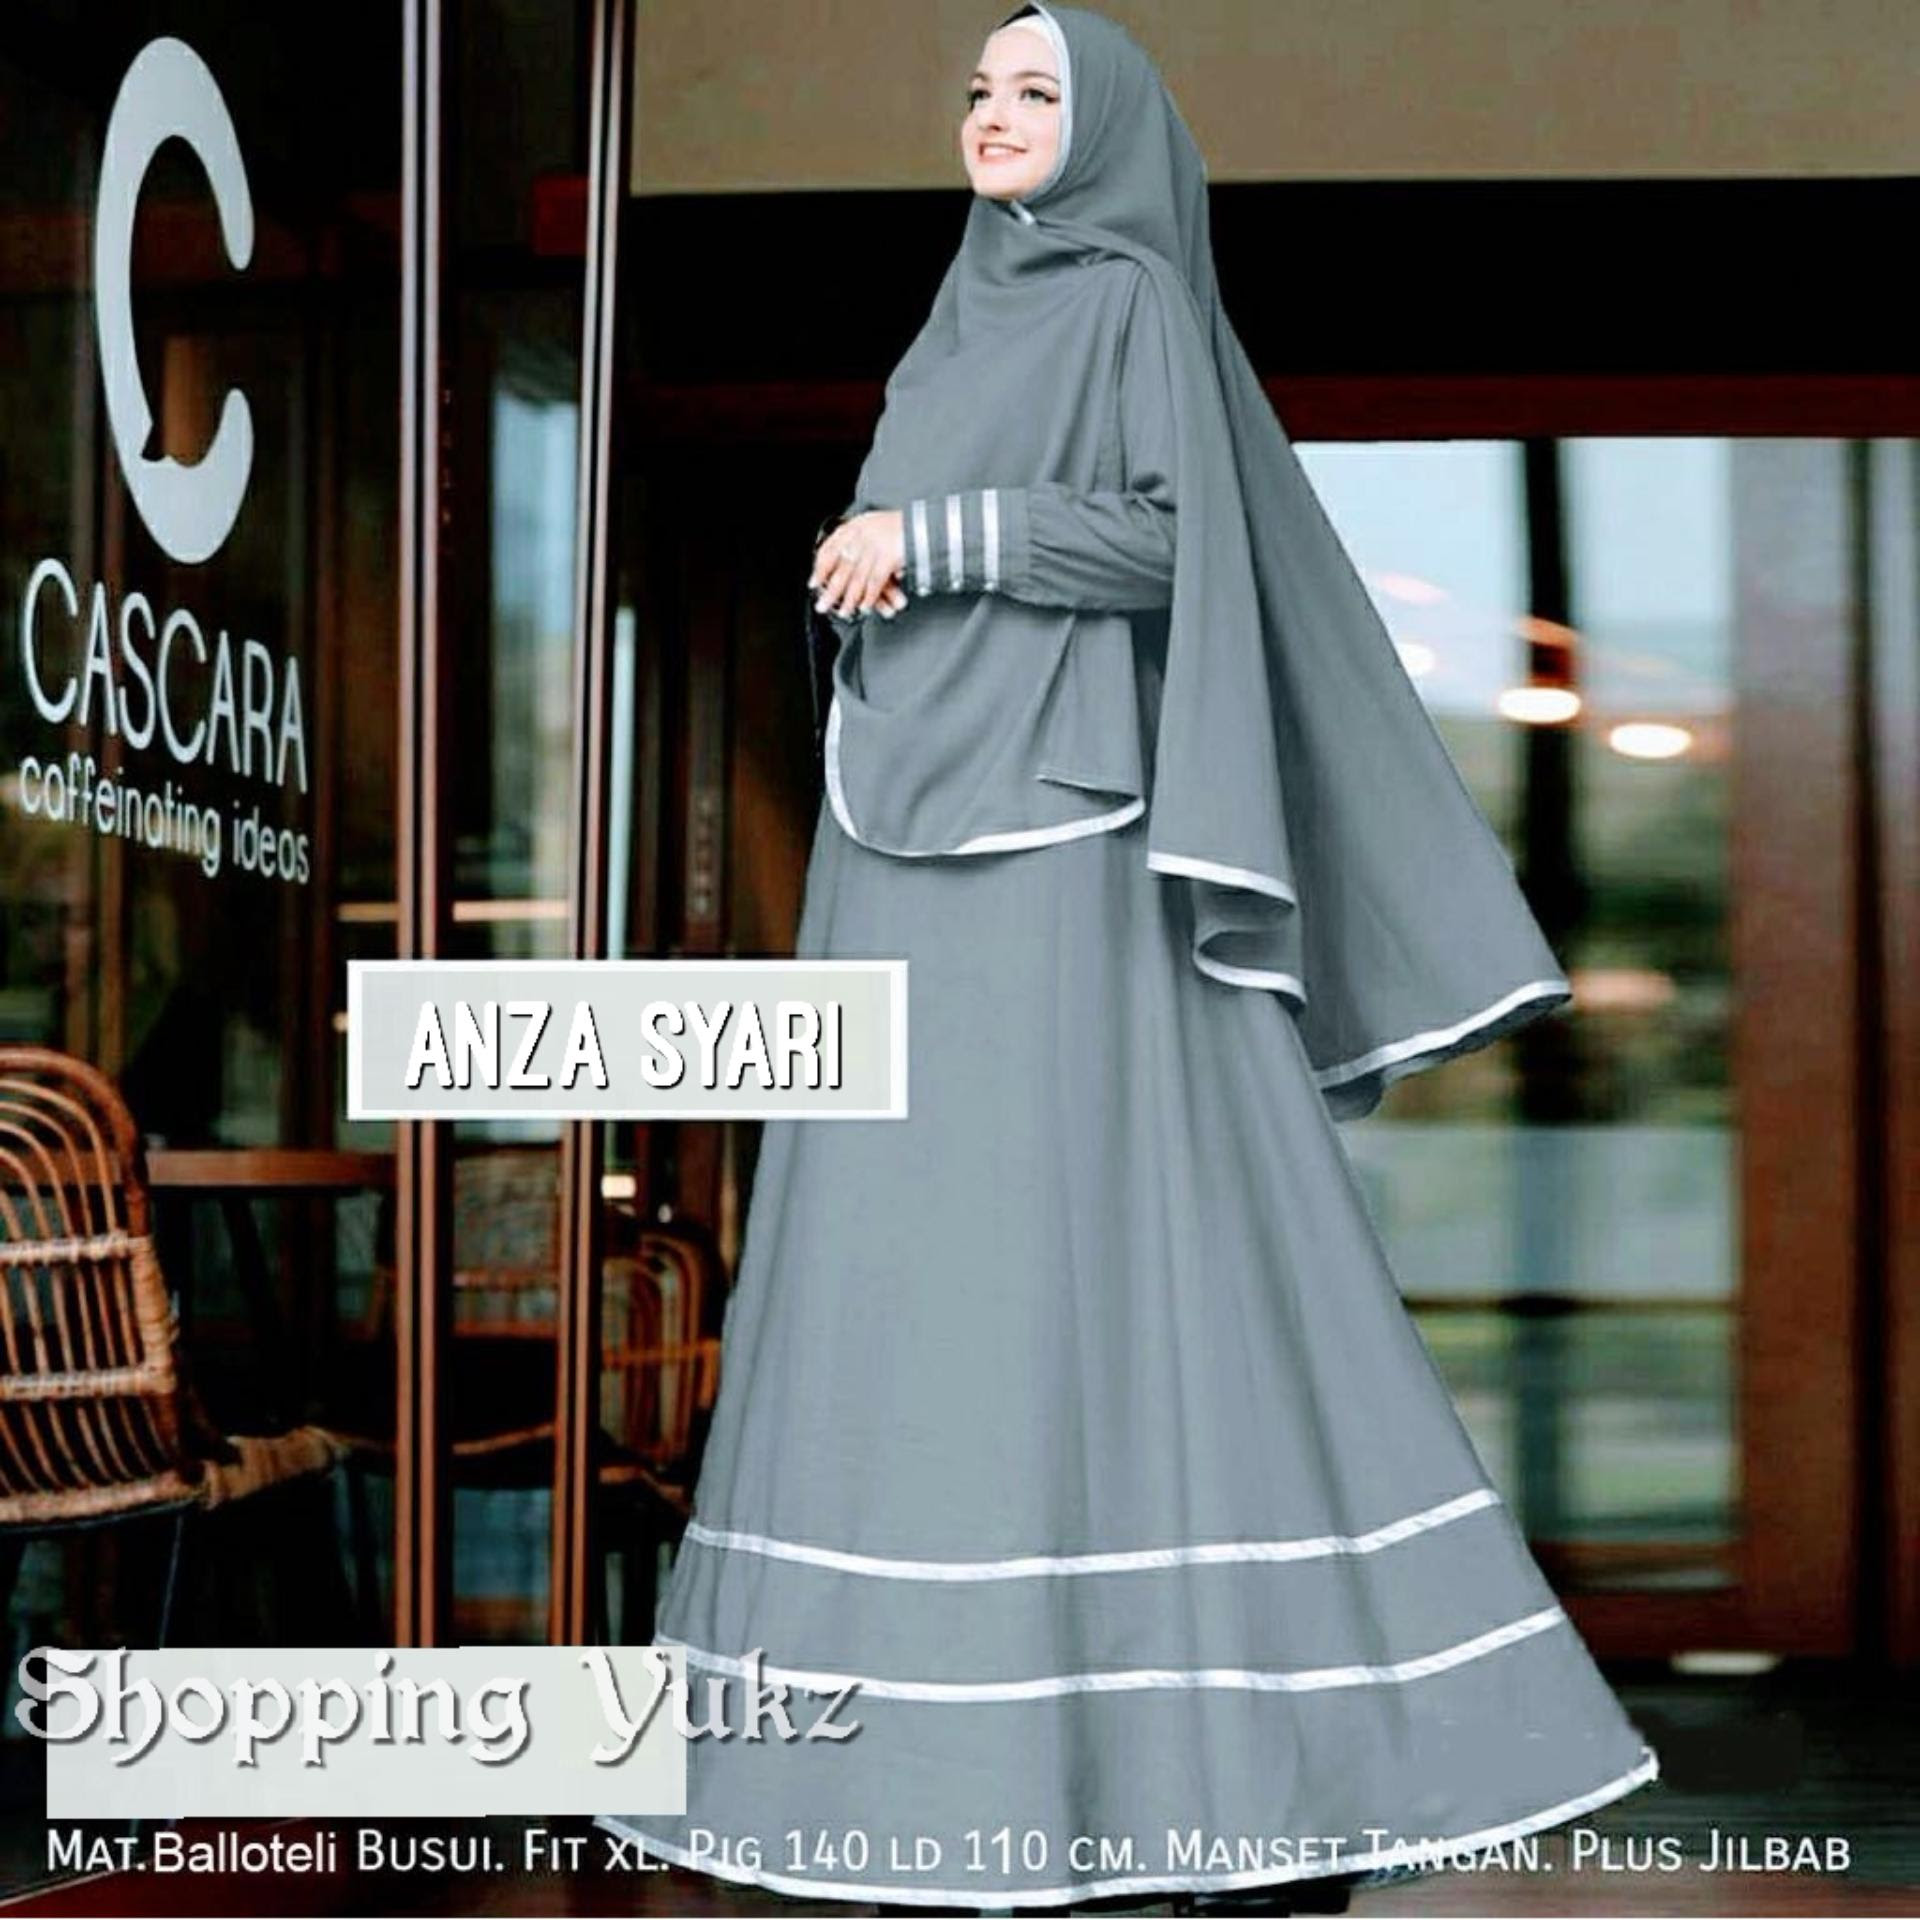 BELI MURAH HARGA DISKON Shopping Yukz Baju  Gamis Dress 